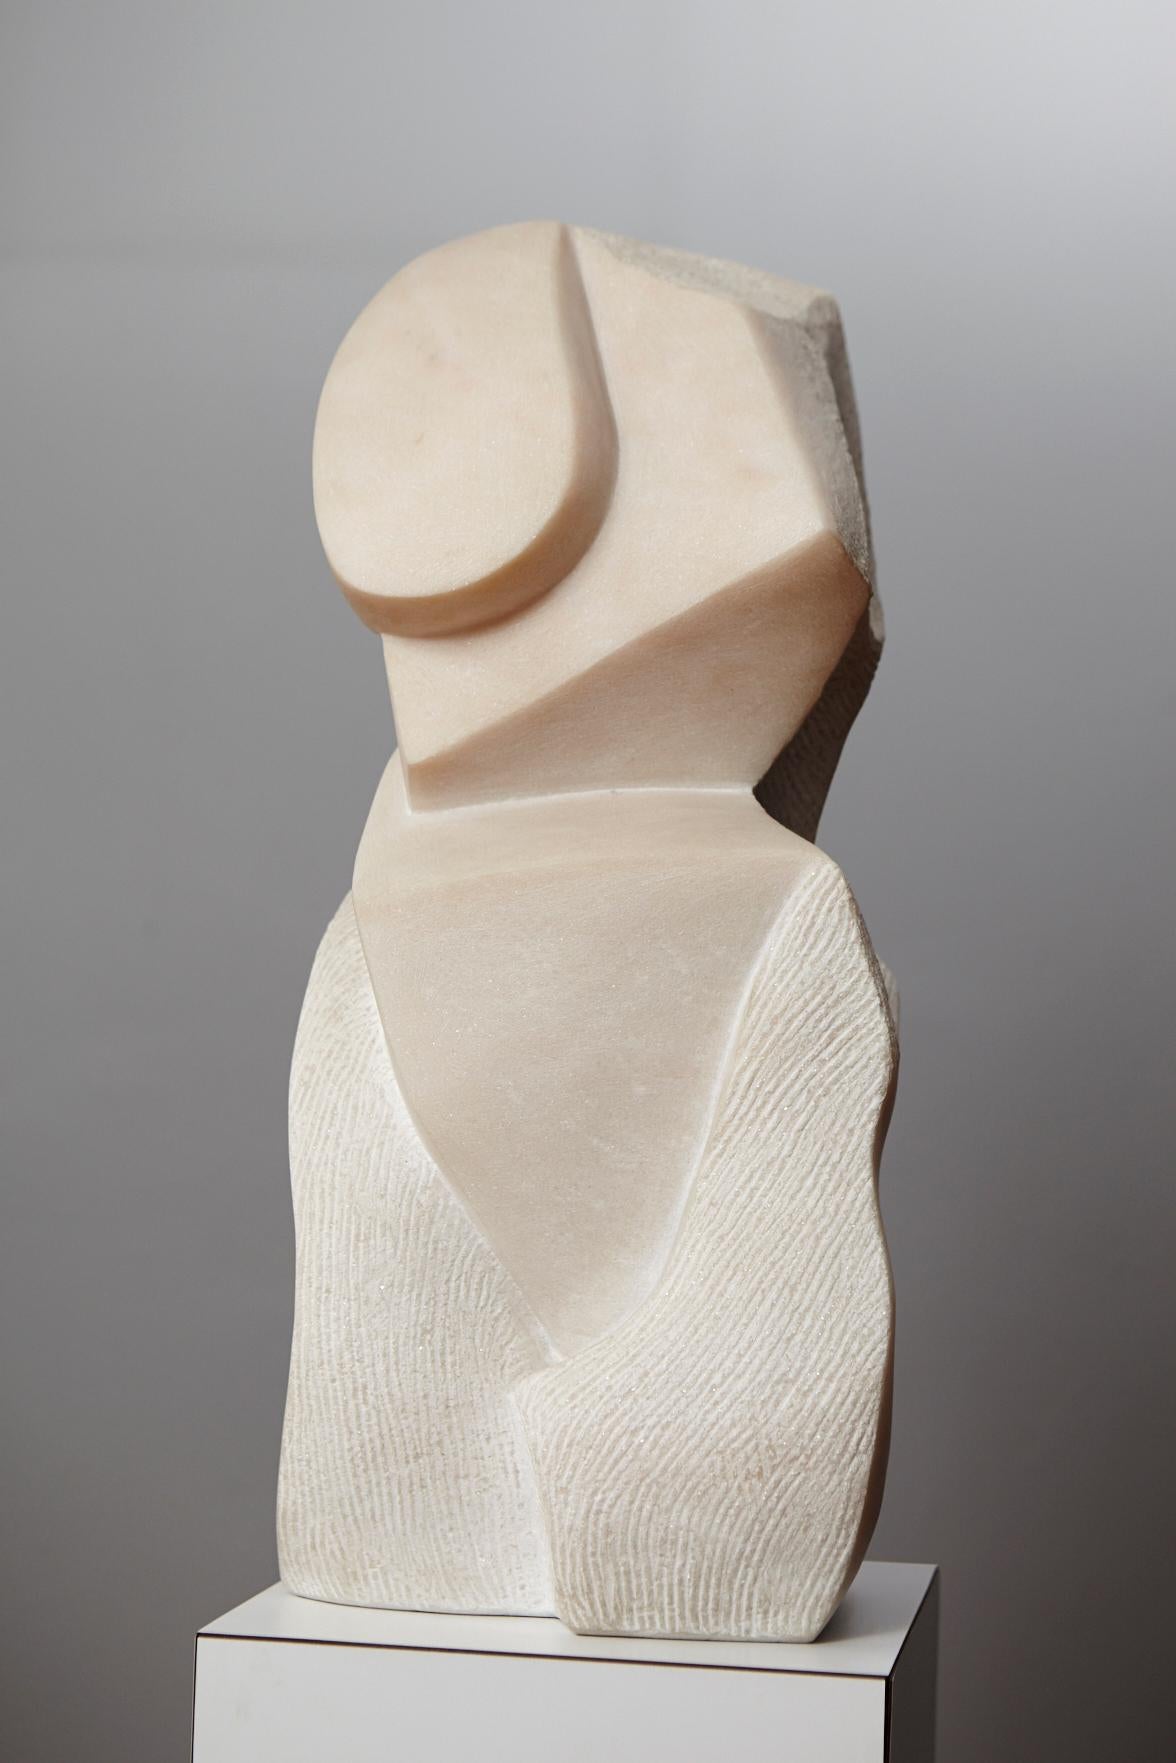 Artemis - Sculpture by Dolores Singer